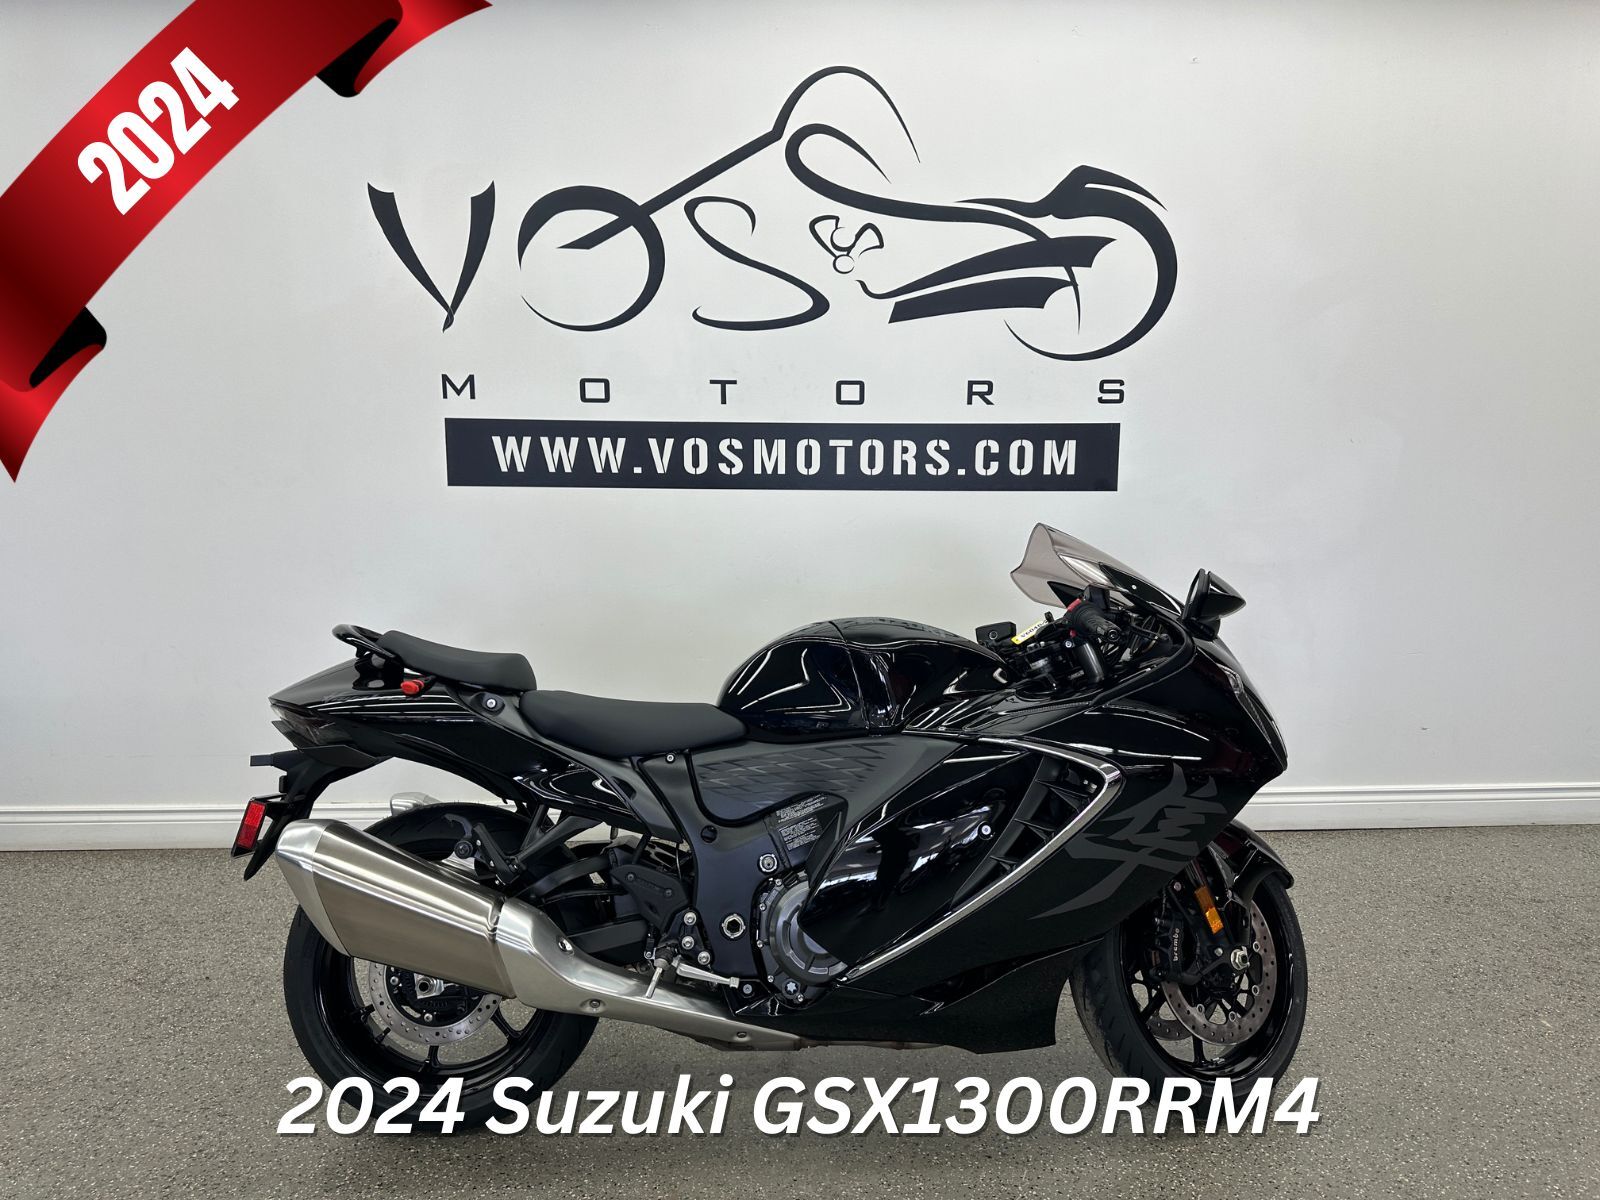 2024 Suzuki GSX1300RRM4 GSX1300RRM4 - V6040 - -Financing Available**